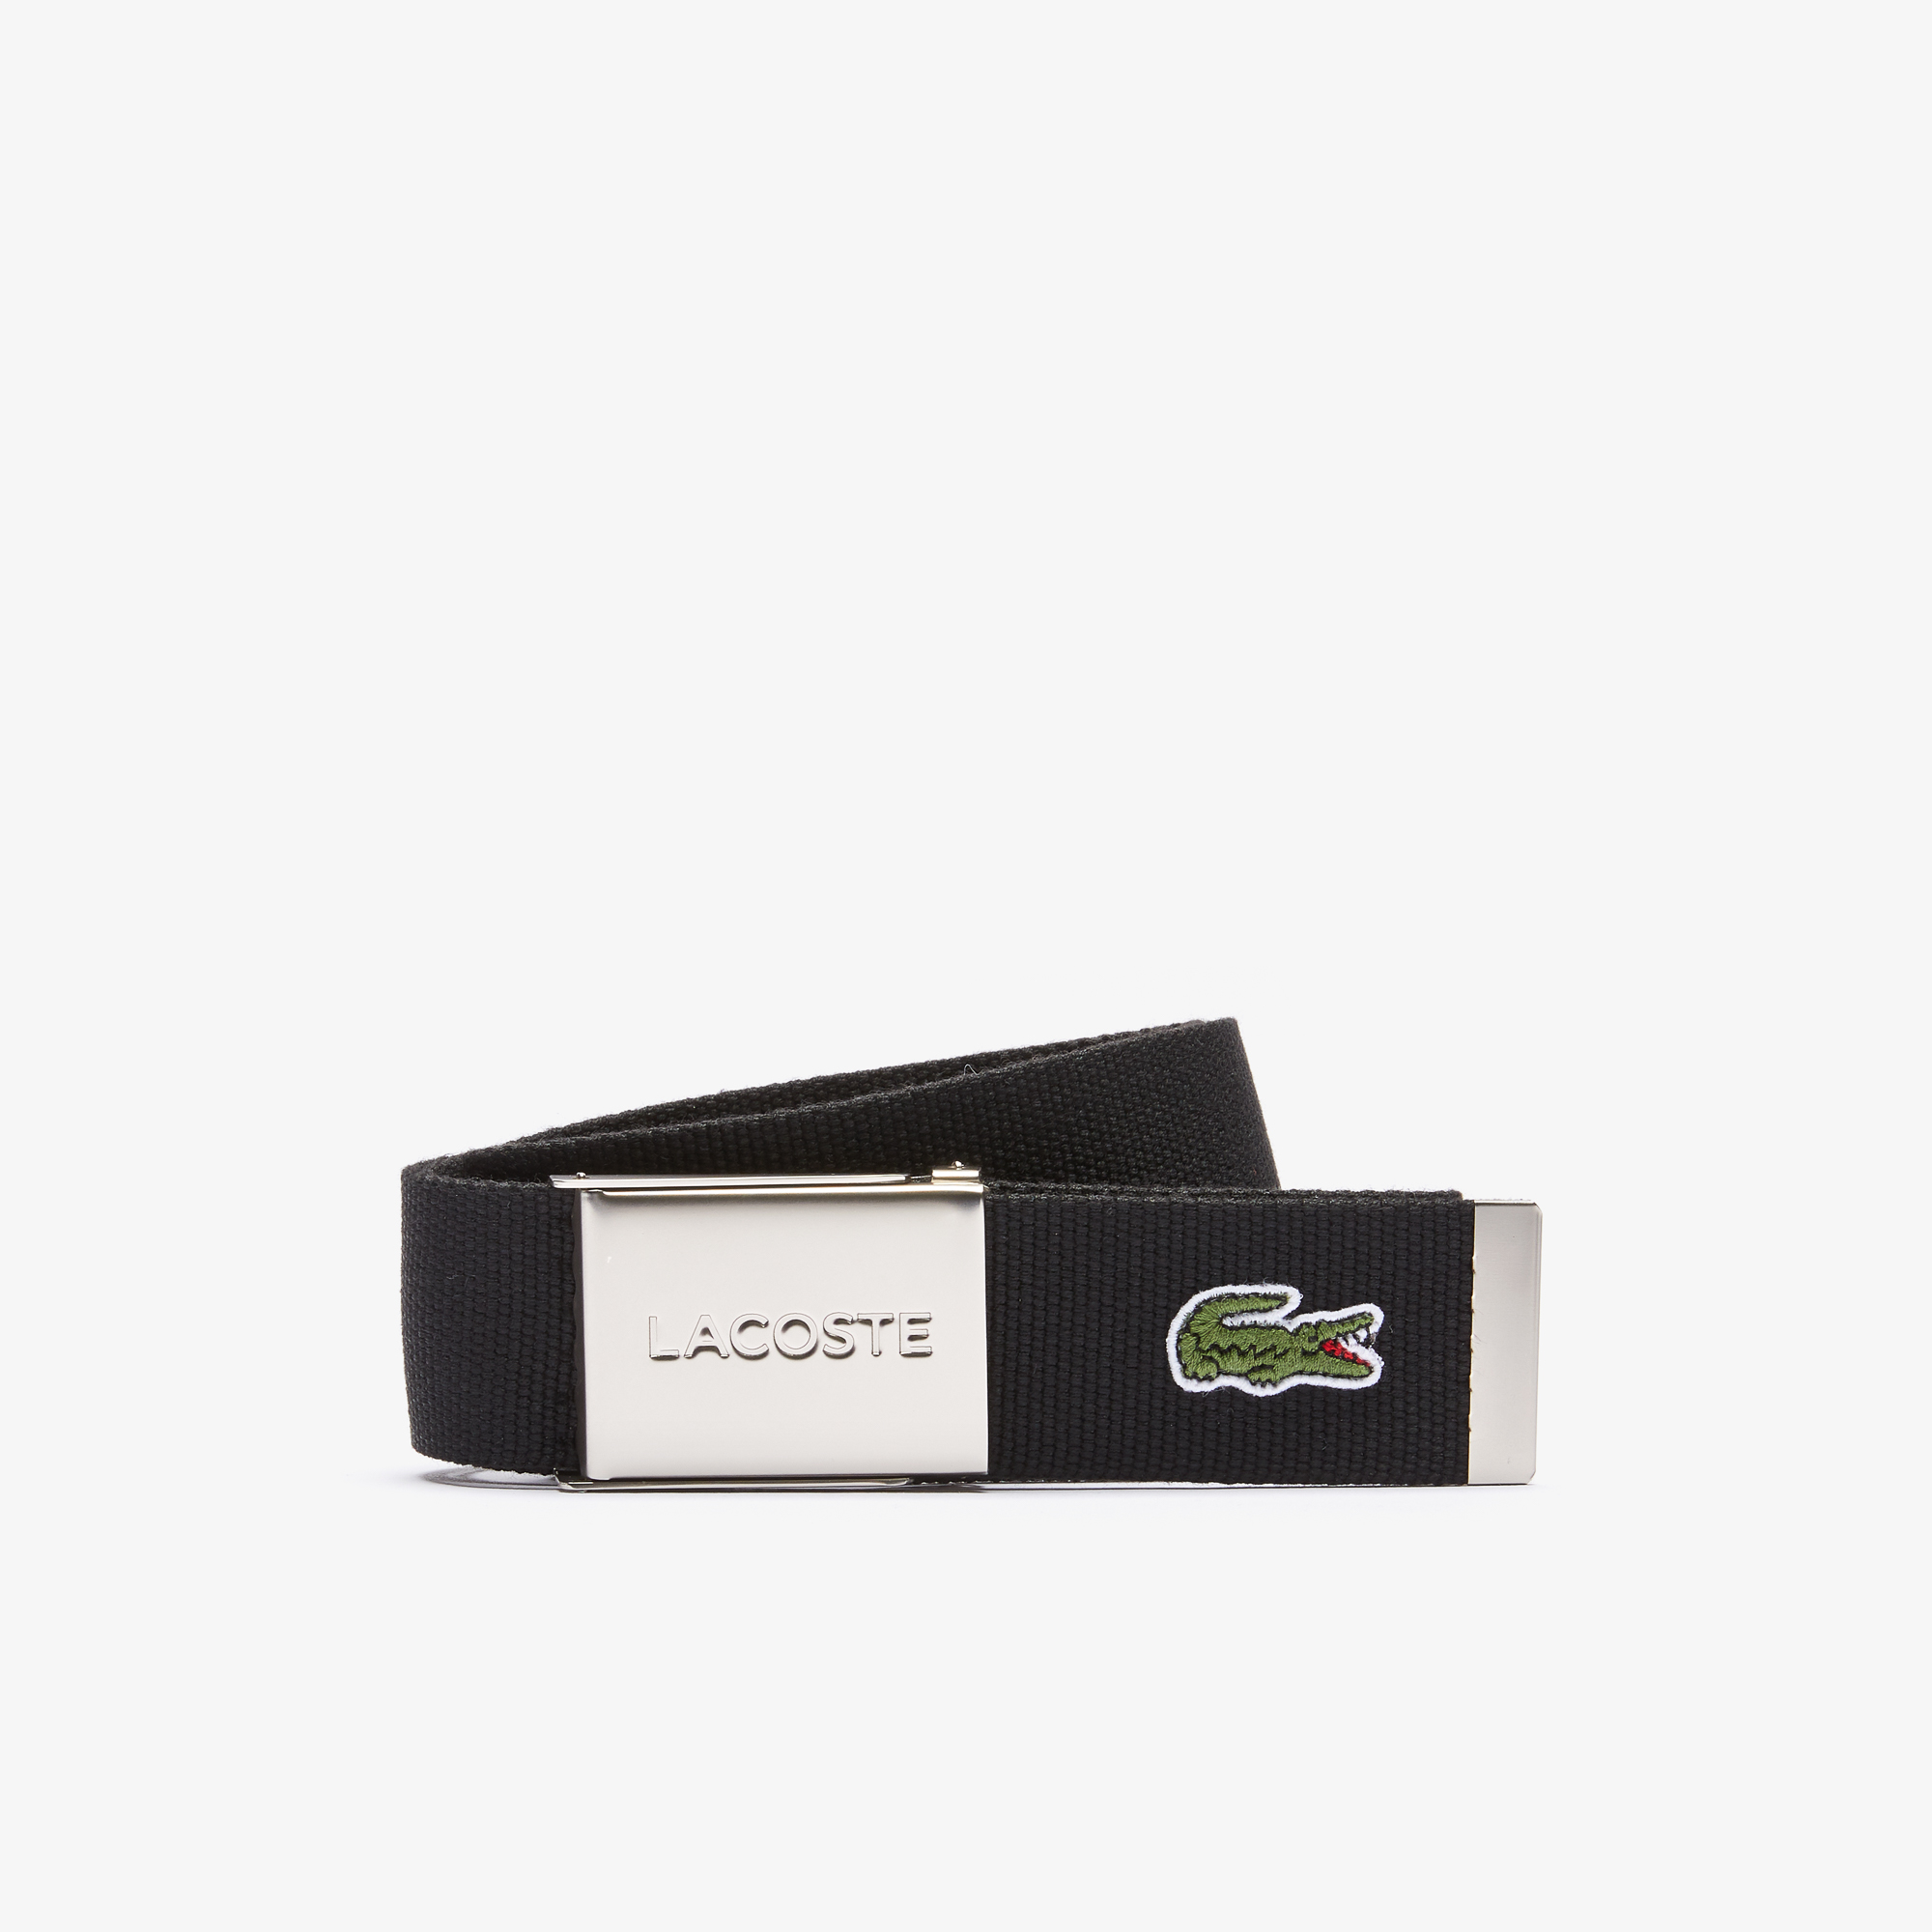 Lacoste pánský tkaný pásek s gravírovanou přezkou Made in France